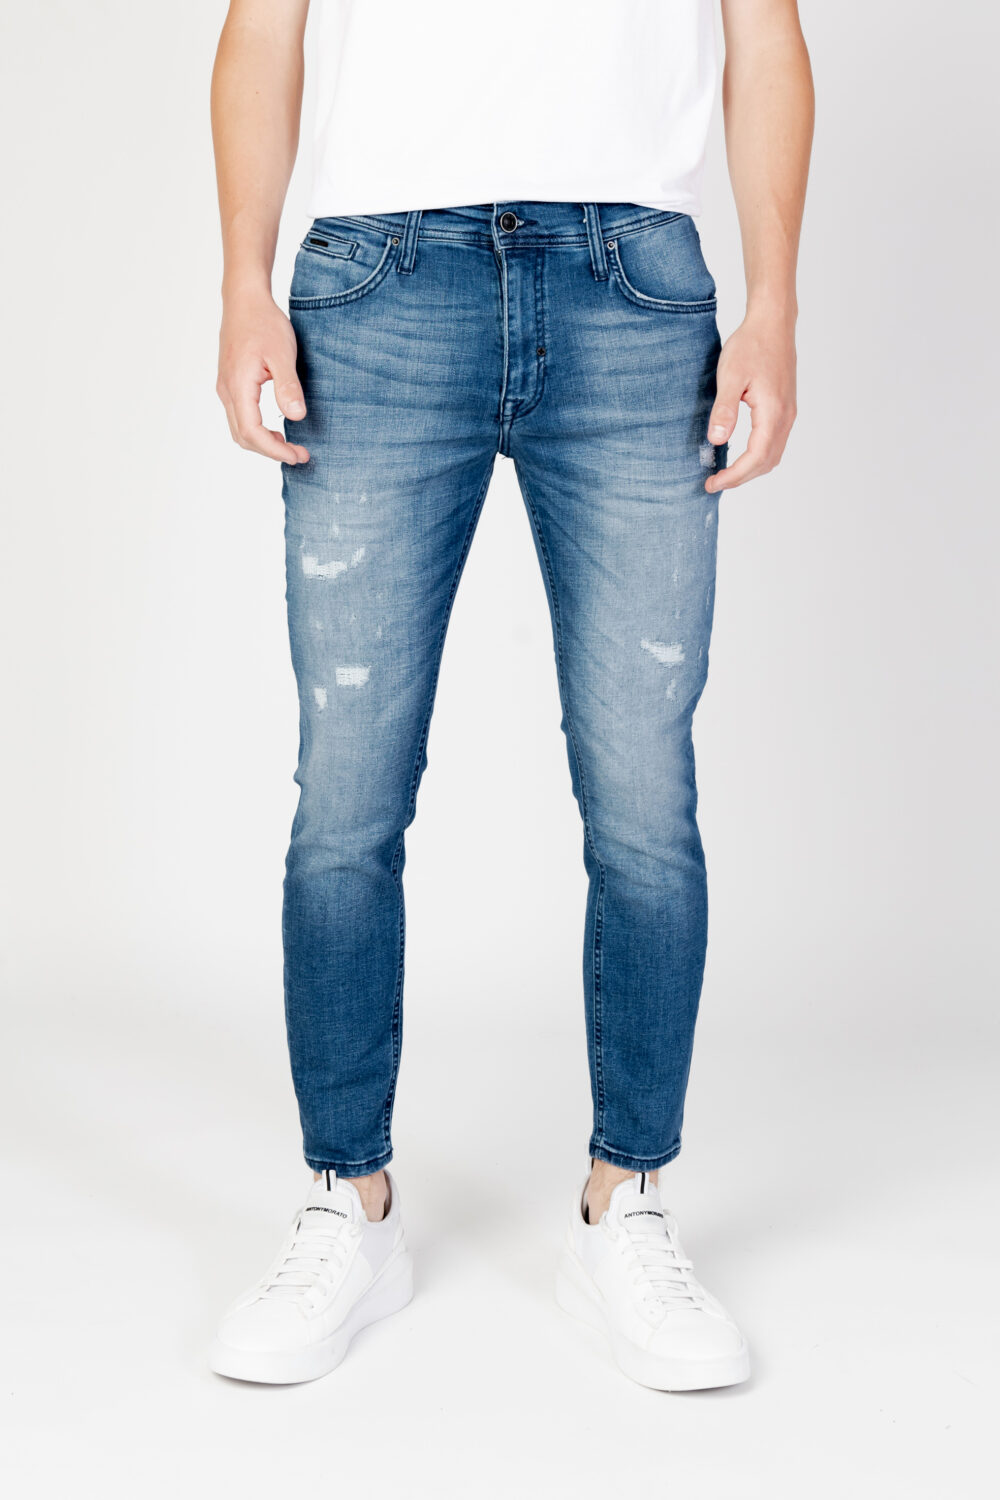 Jeans skinny Antony Morato karl skinny cropped fit Denim - Foto 7